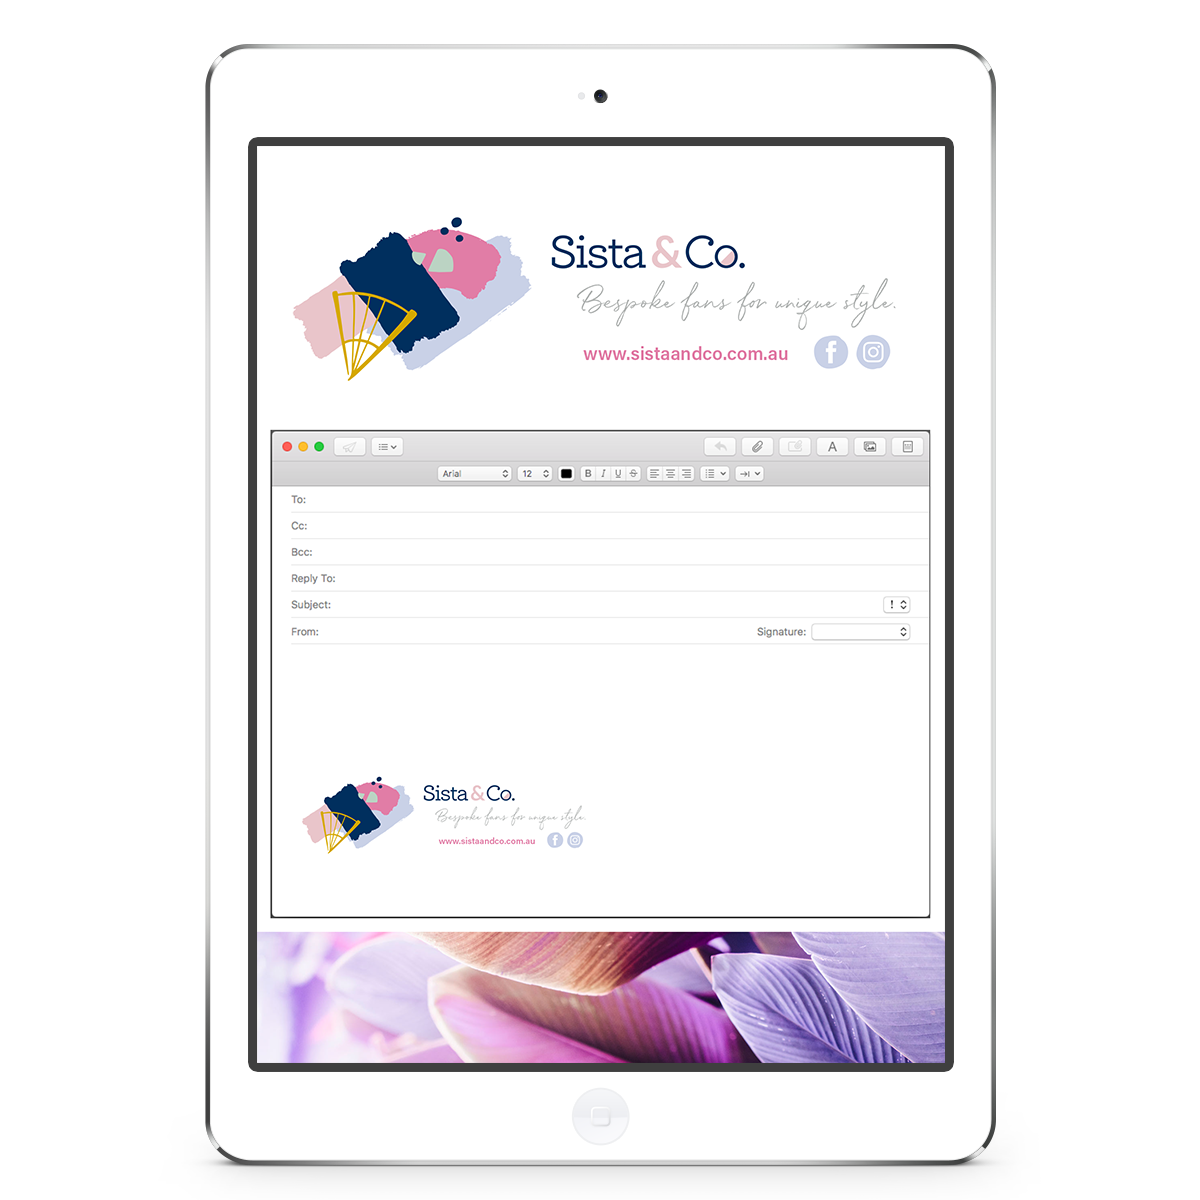 Sista & Co Email Signature